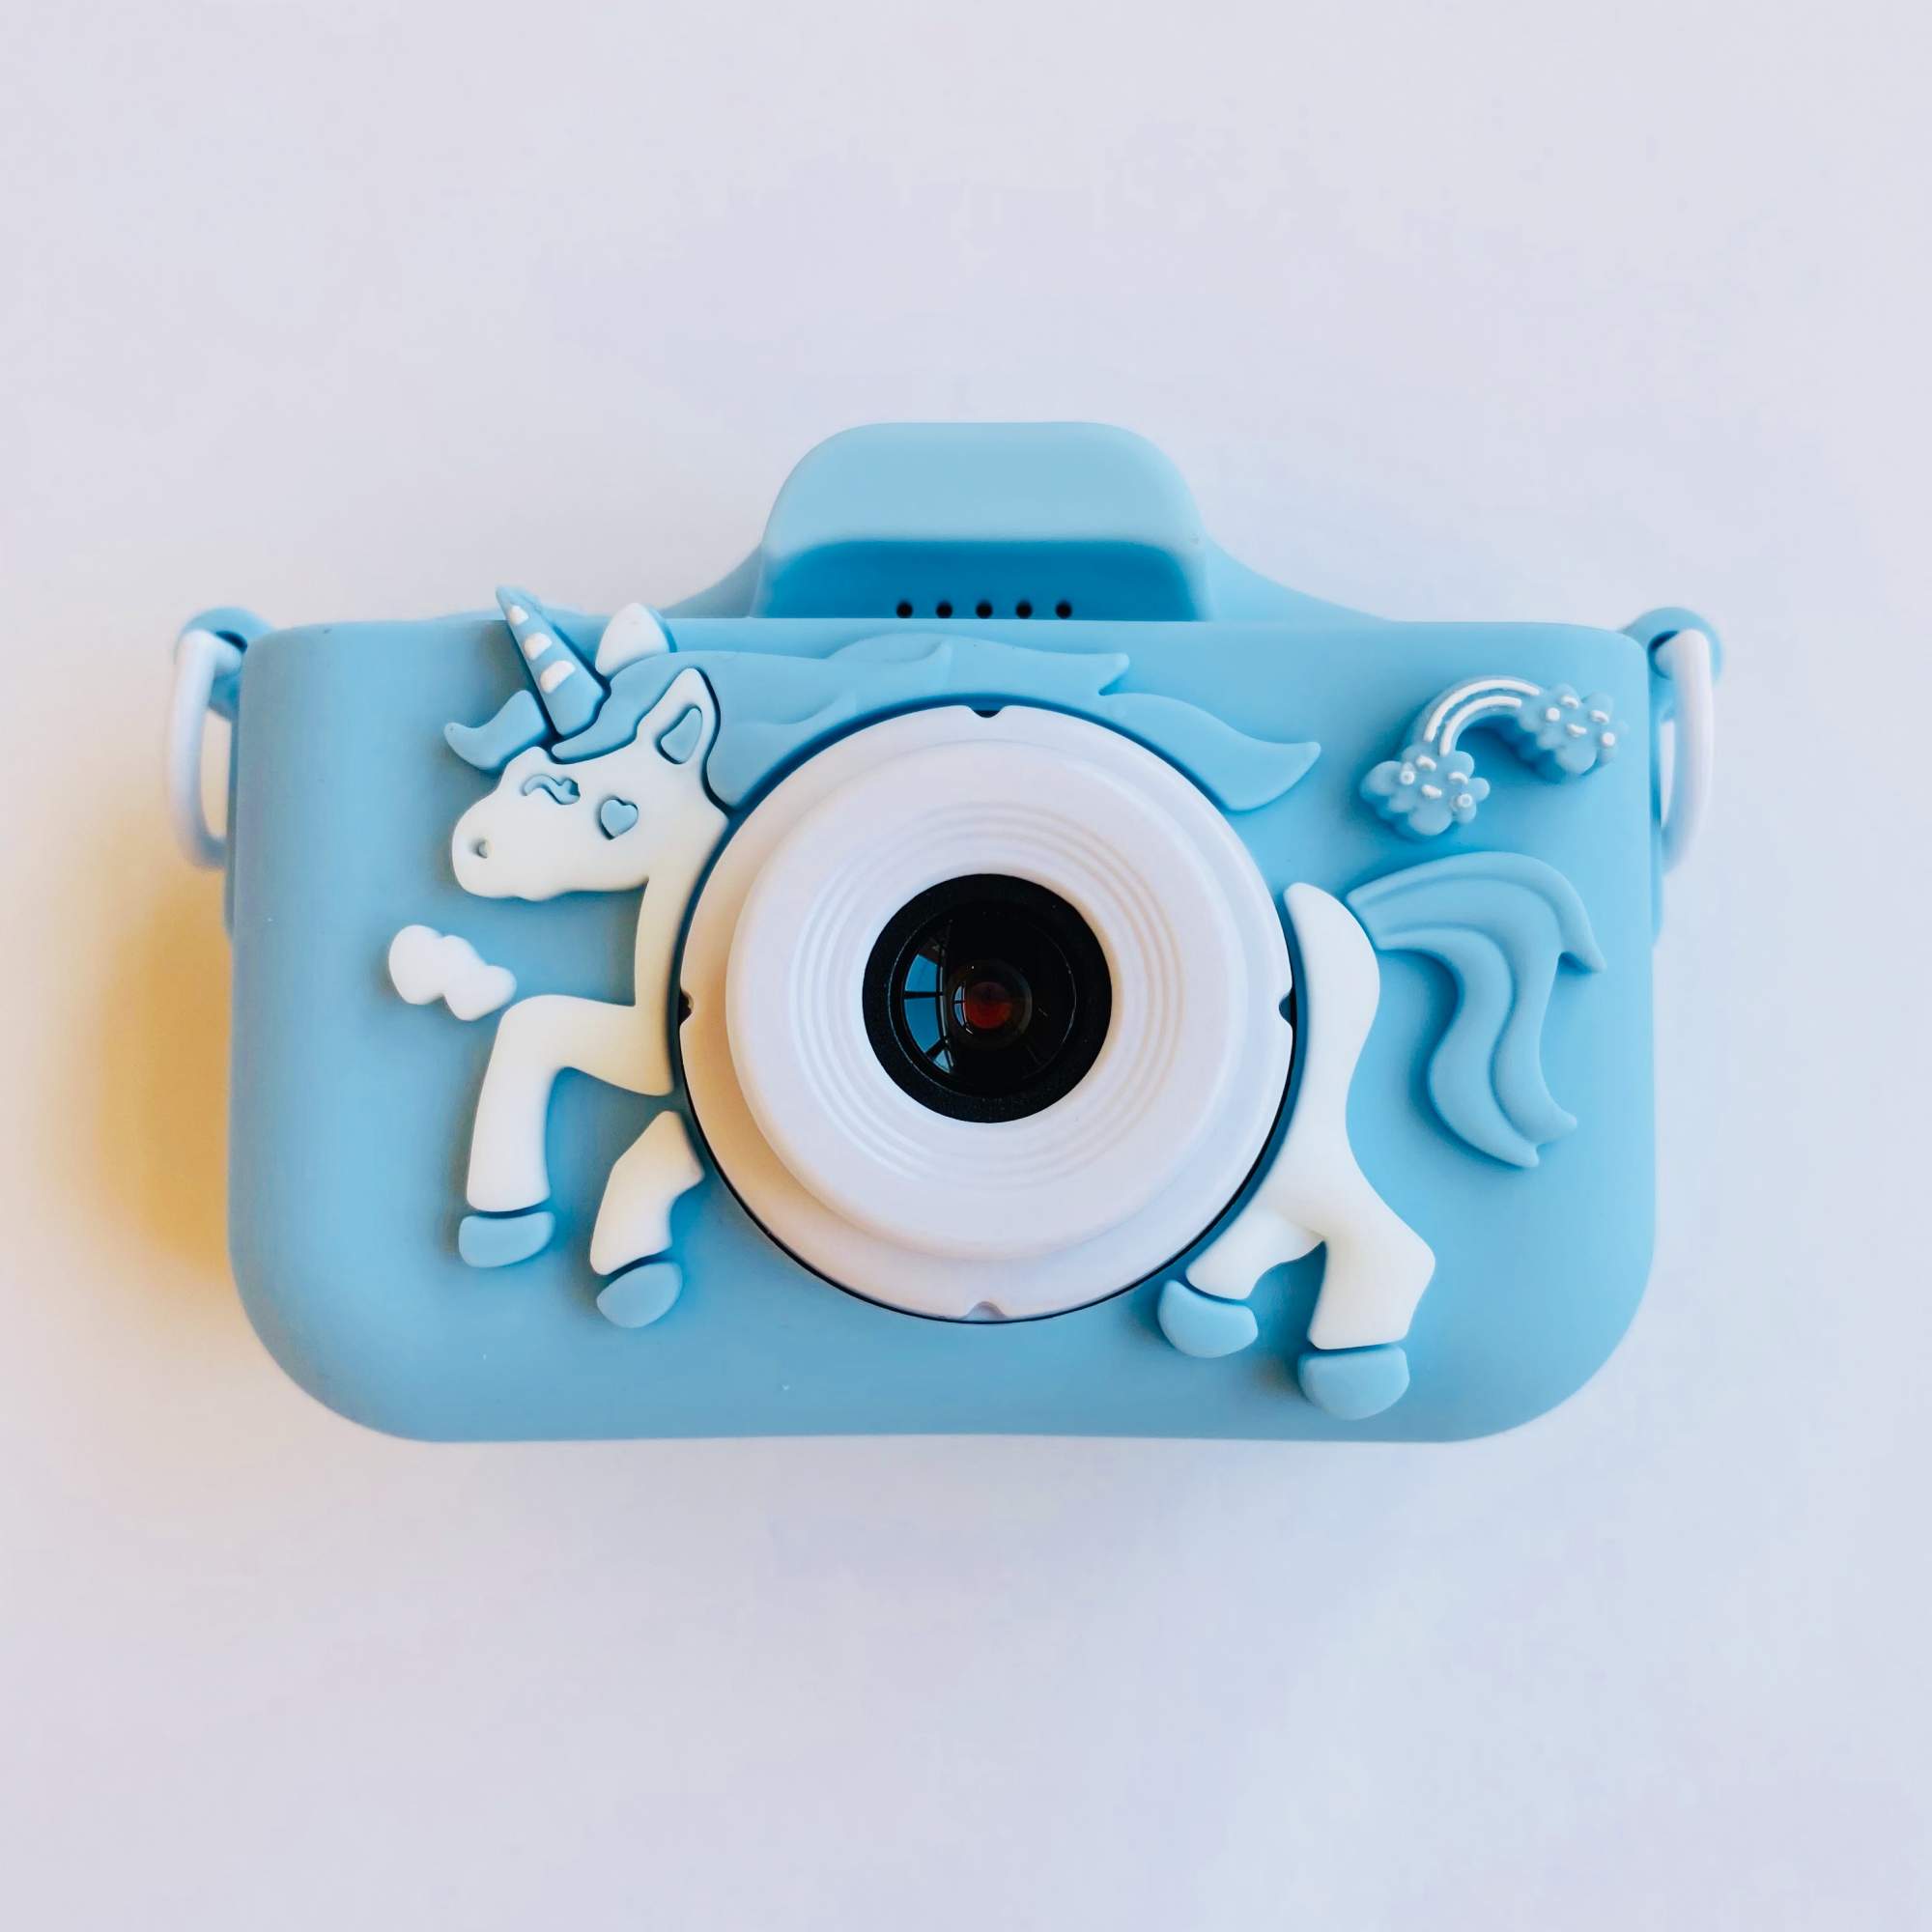 Детский цифровой фотоаппарат 48Mpx с играми и селфи камерой для мальчика Единорог голубой фотоаппарат kuplace print camera 24 мп с играми функция печати фото котик голубой